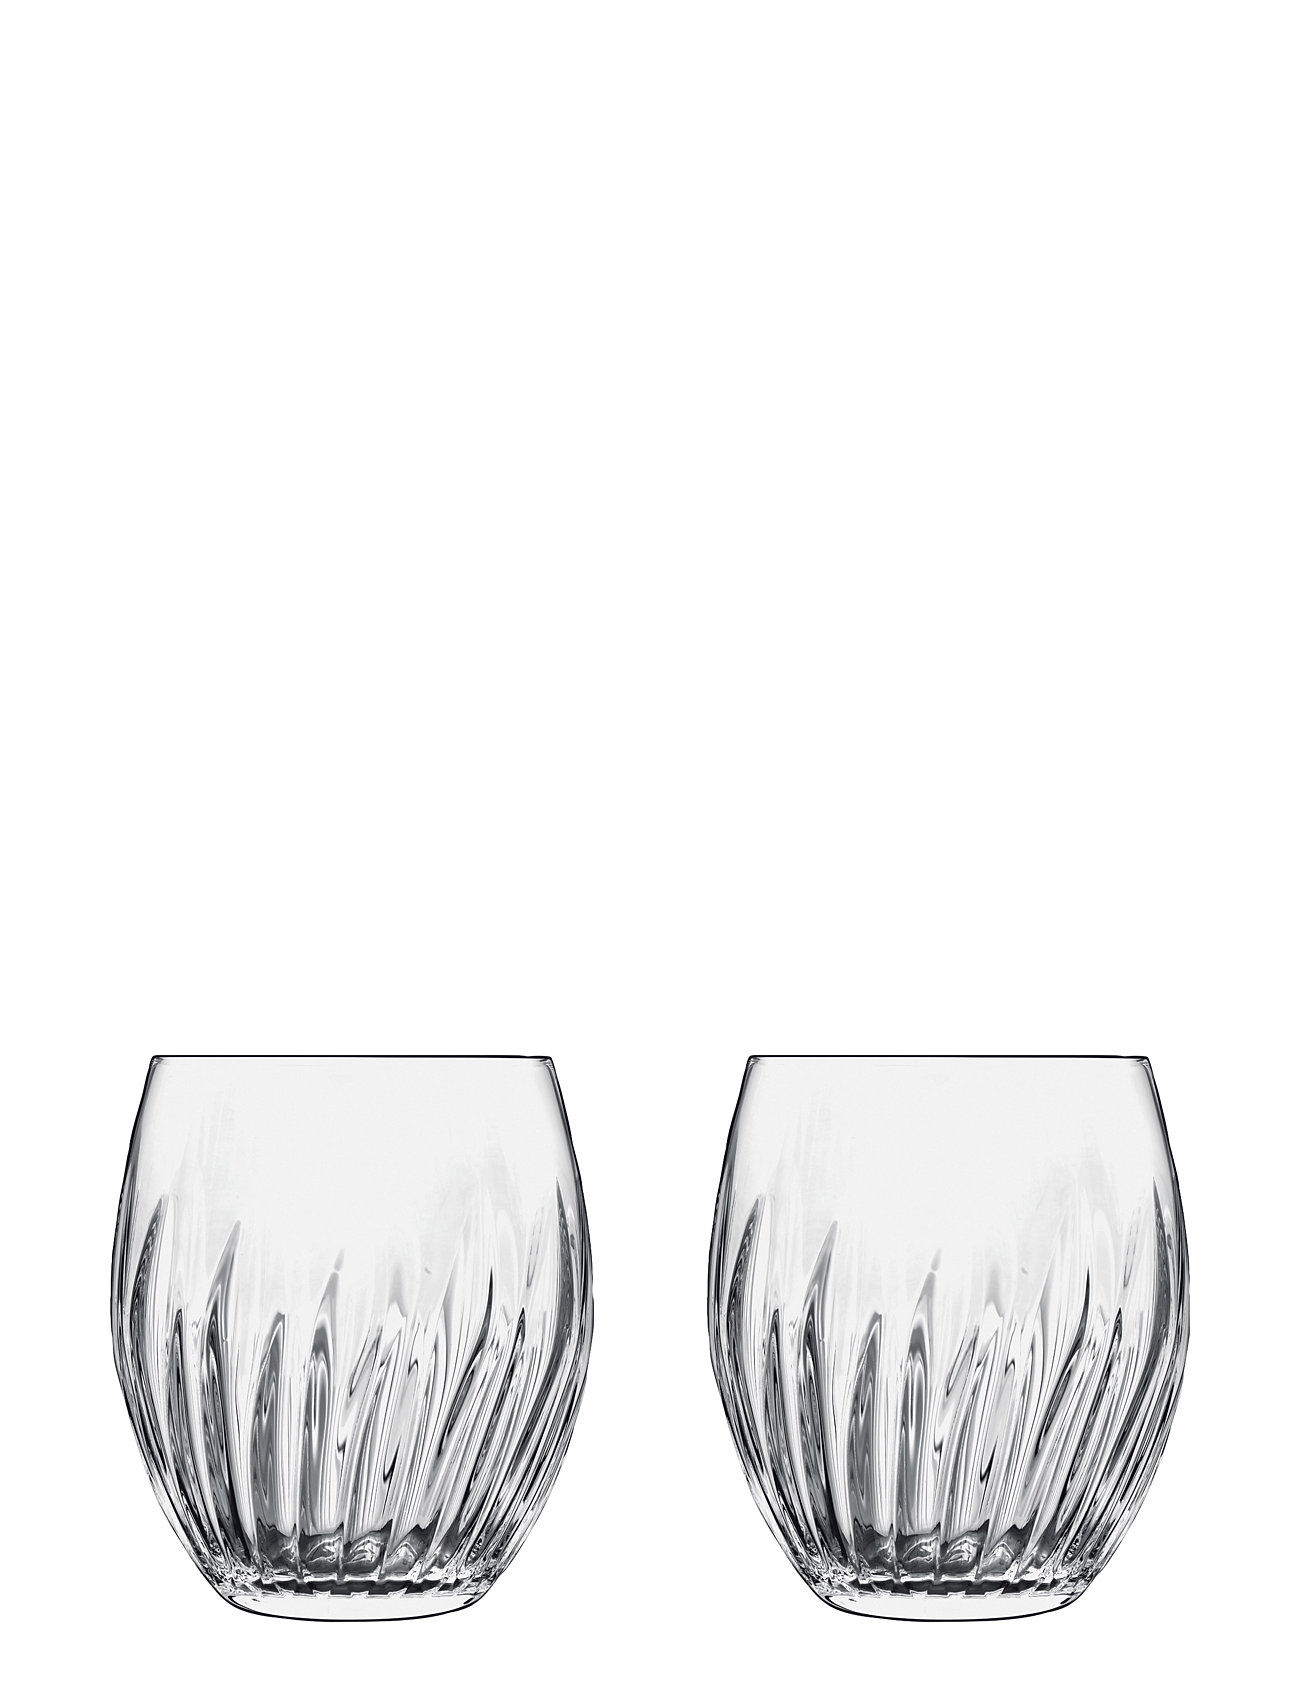 Vandglas/Whiskyglas Mixology Home Tableware Glass Drinking Glass Nude Luigi Bormioli